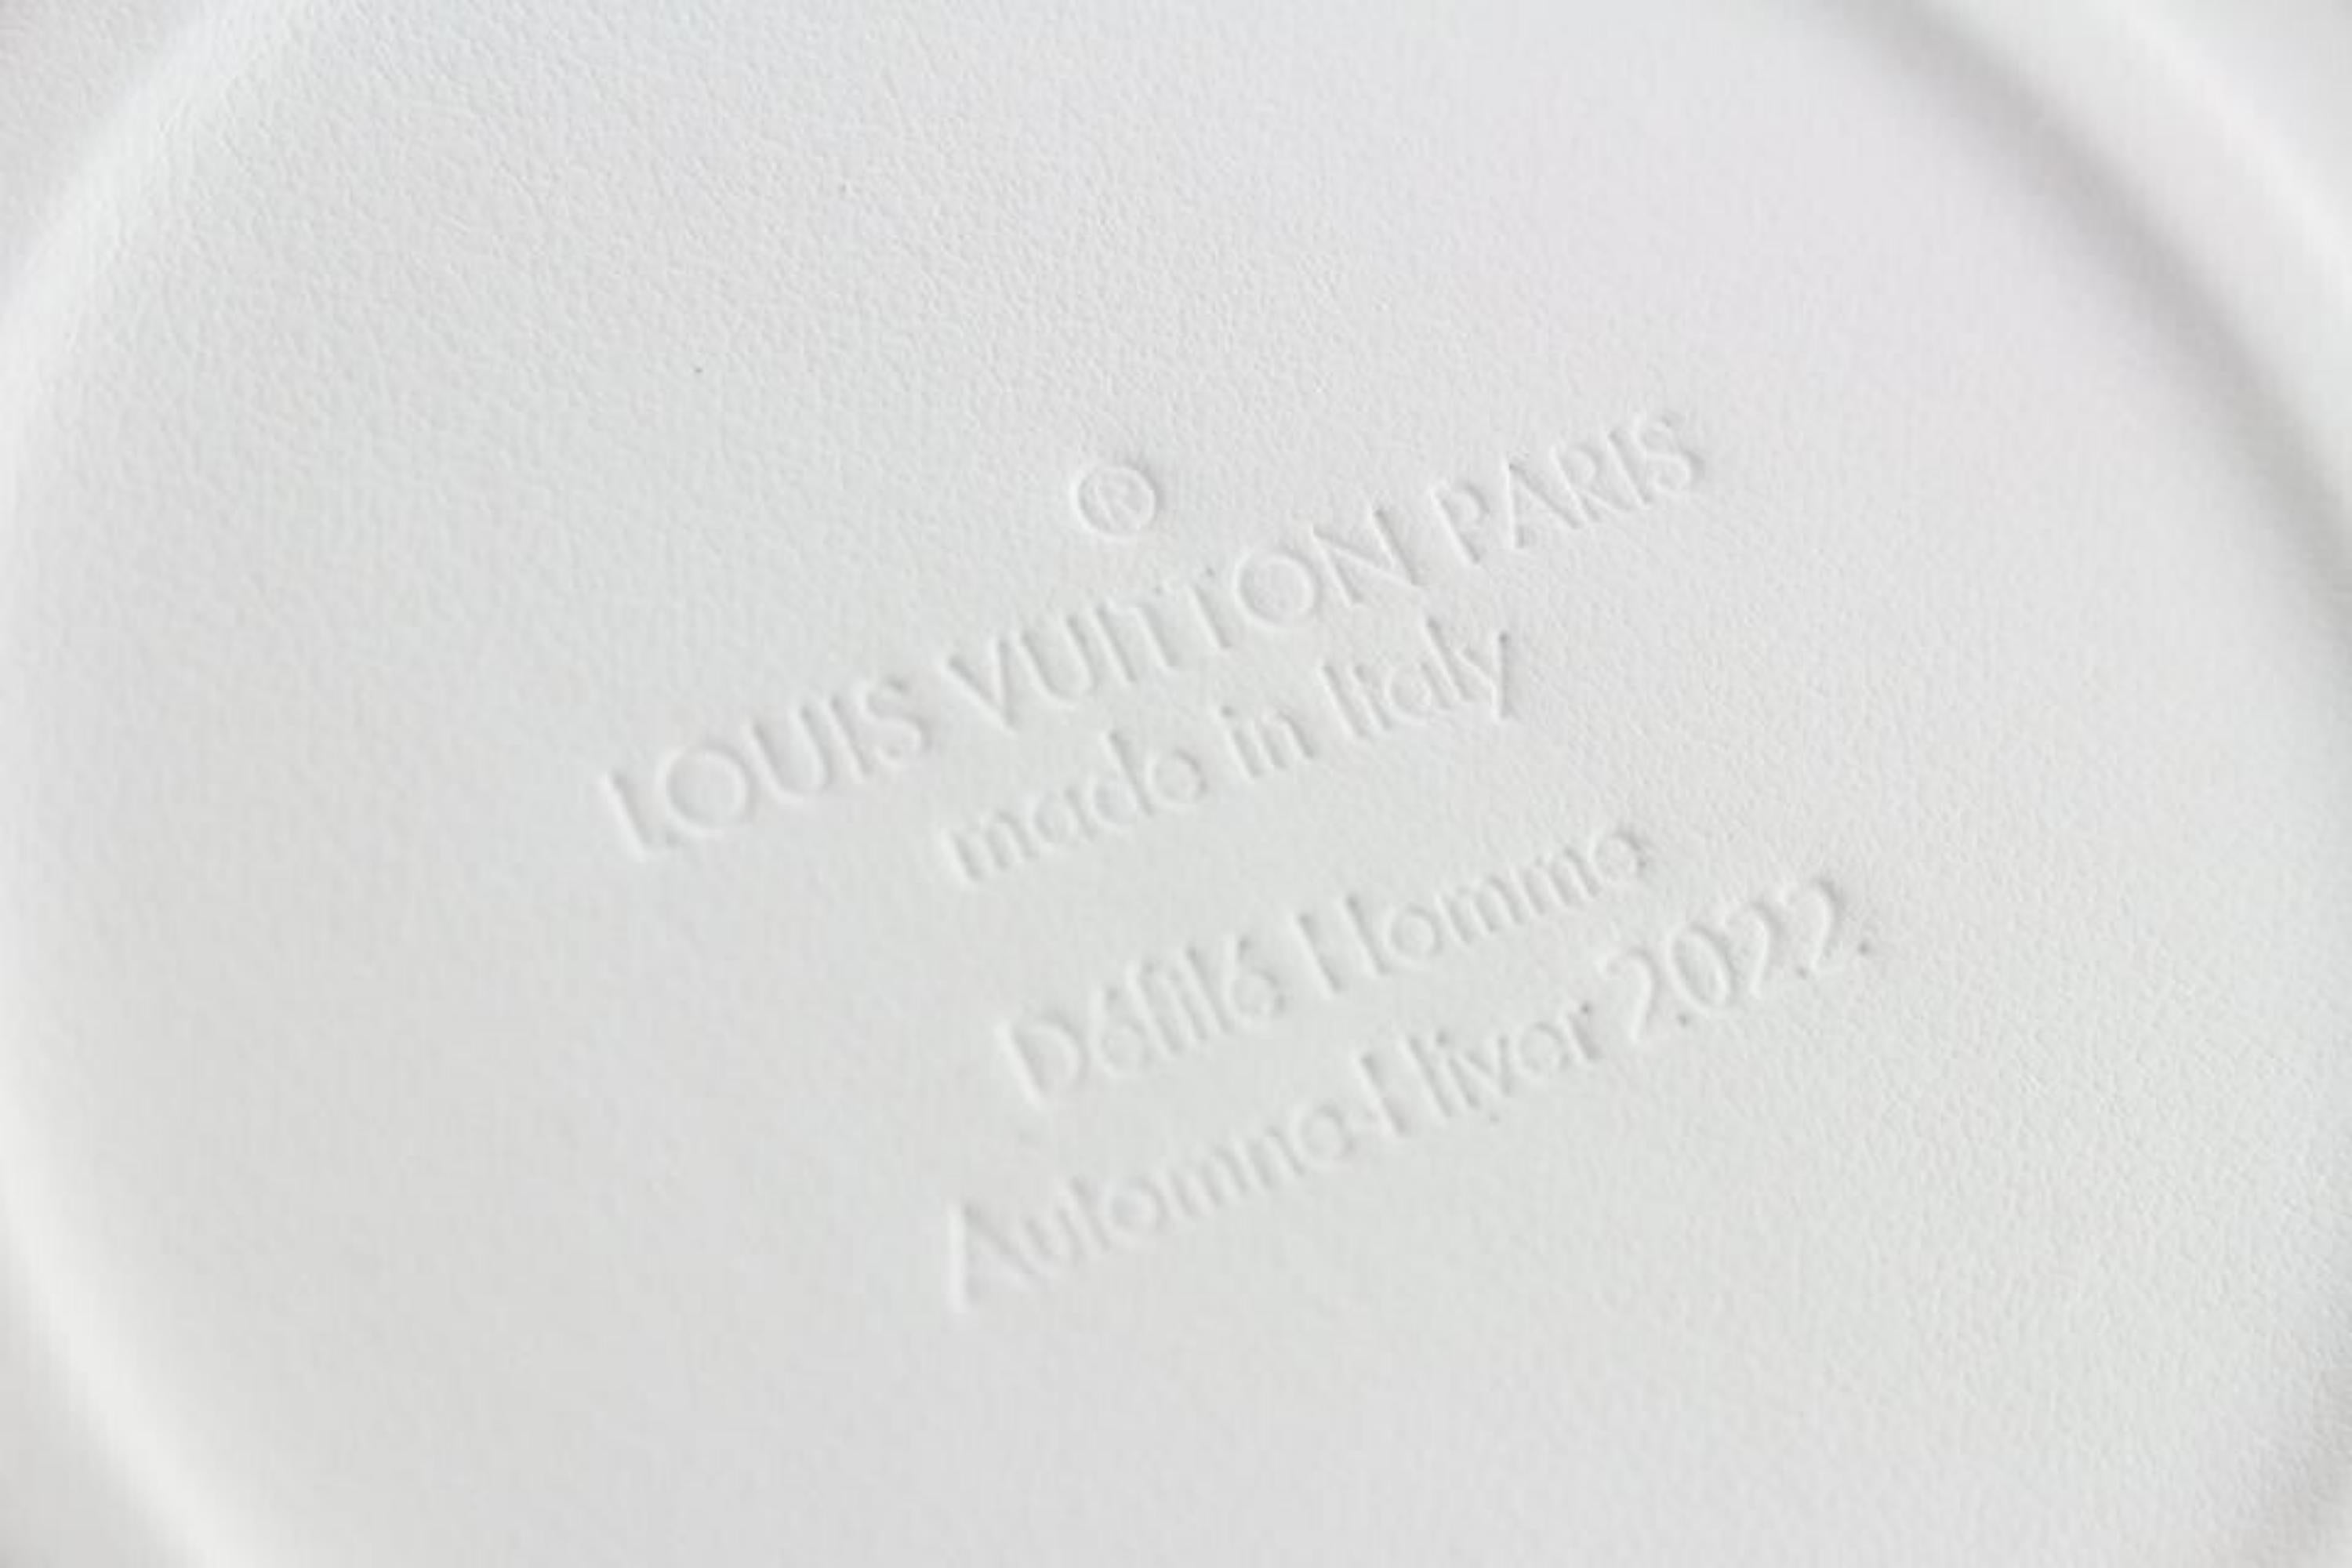 Louis Vuitton Virgil Abloh Purple Monogram Paint Can 90L26a